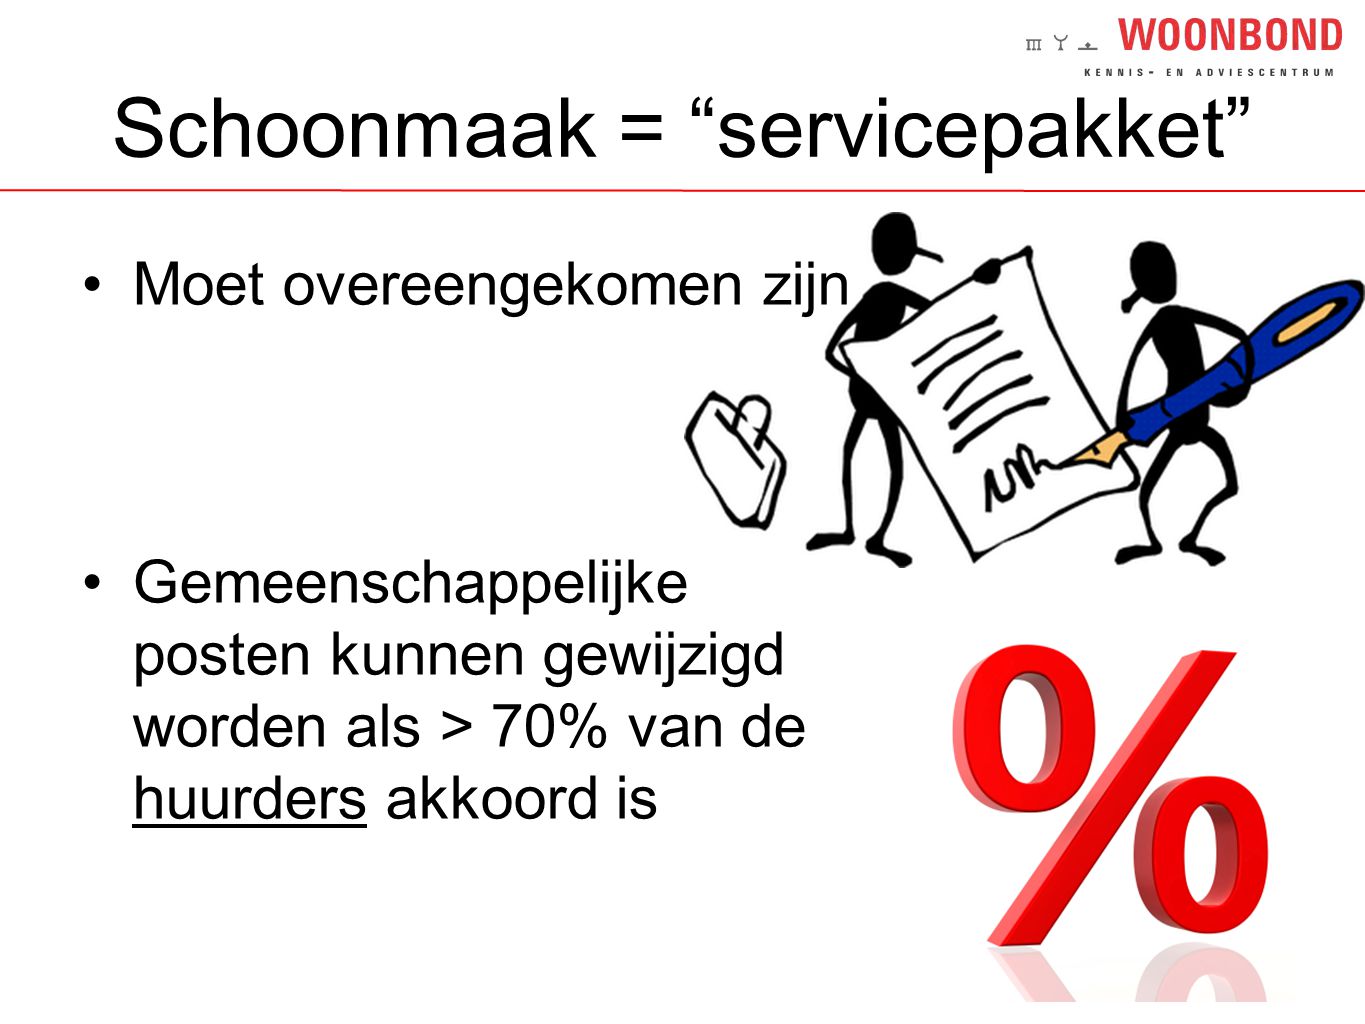 Schoonmaak = servicepakket